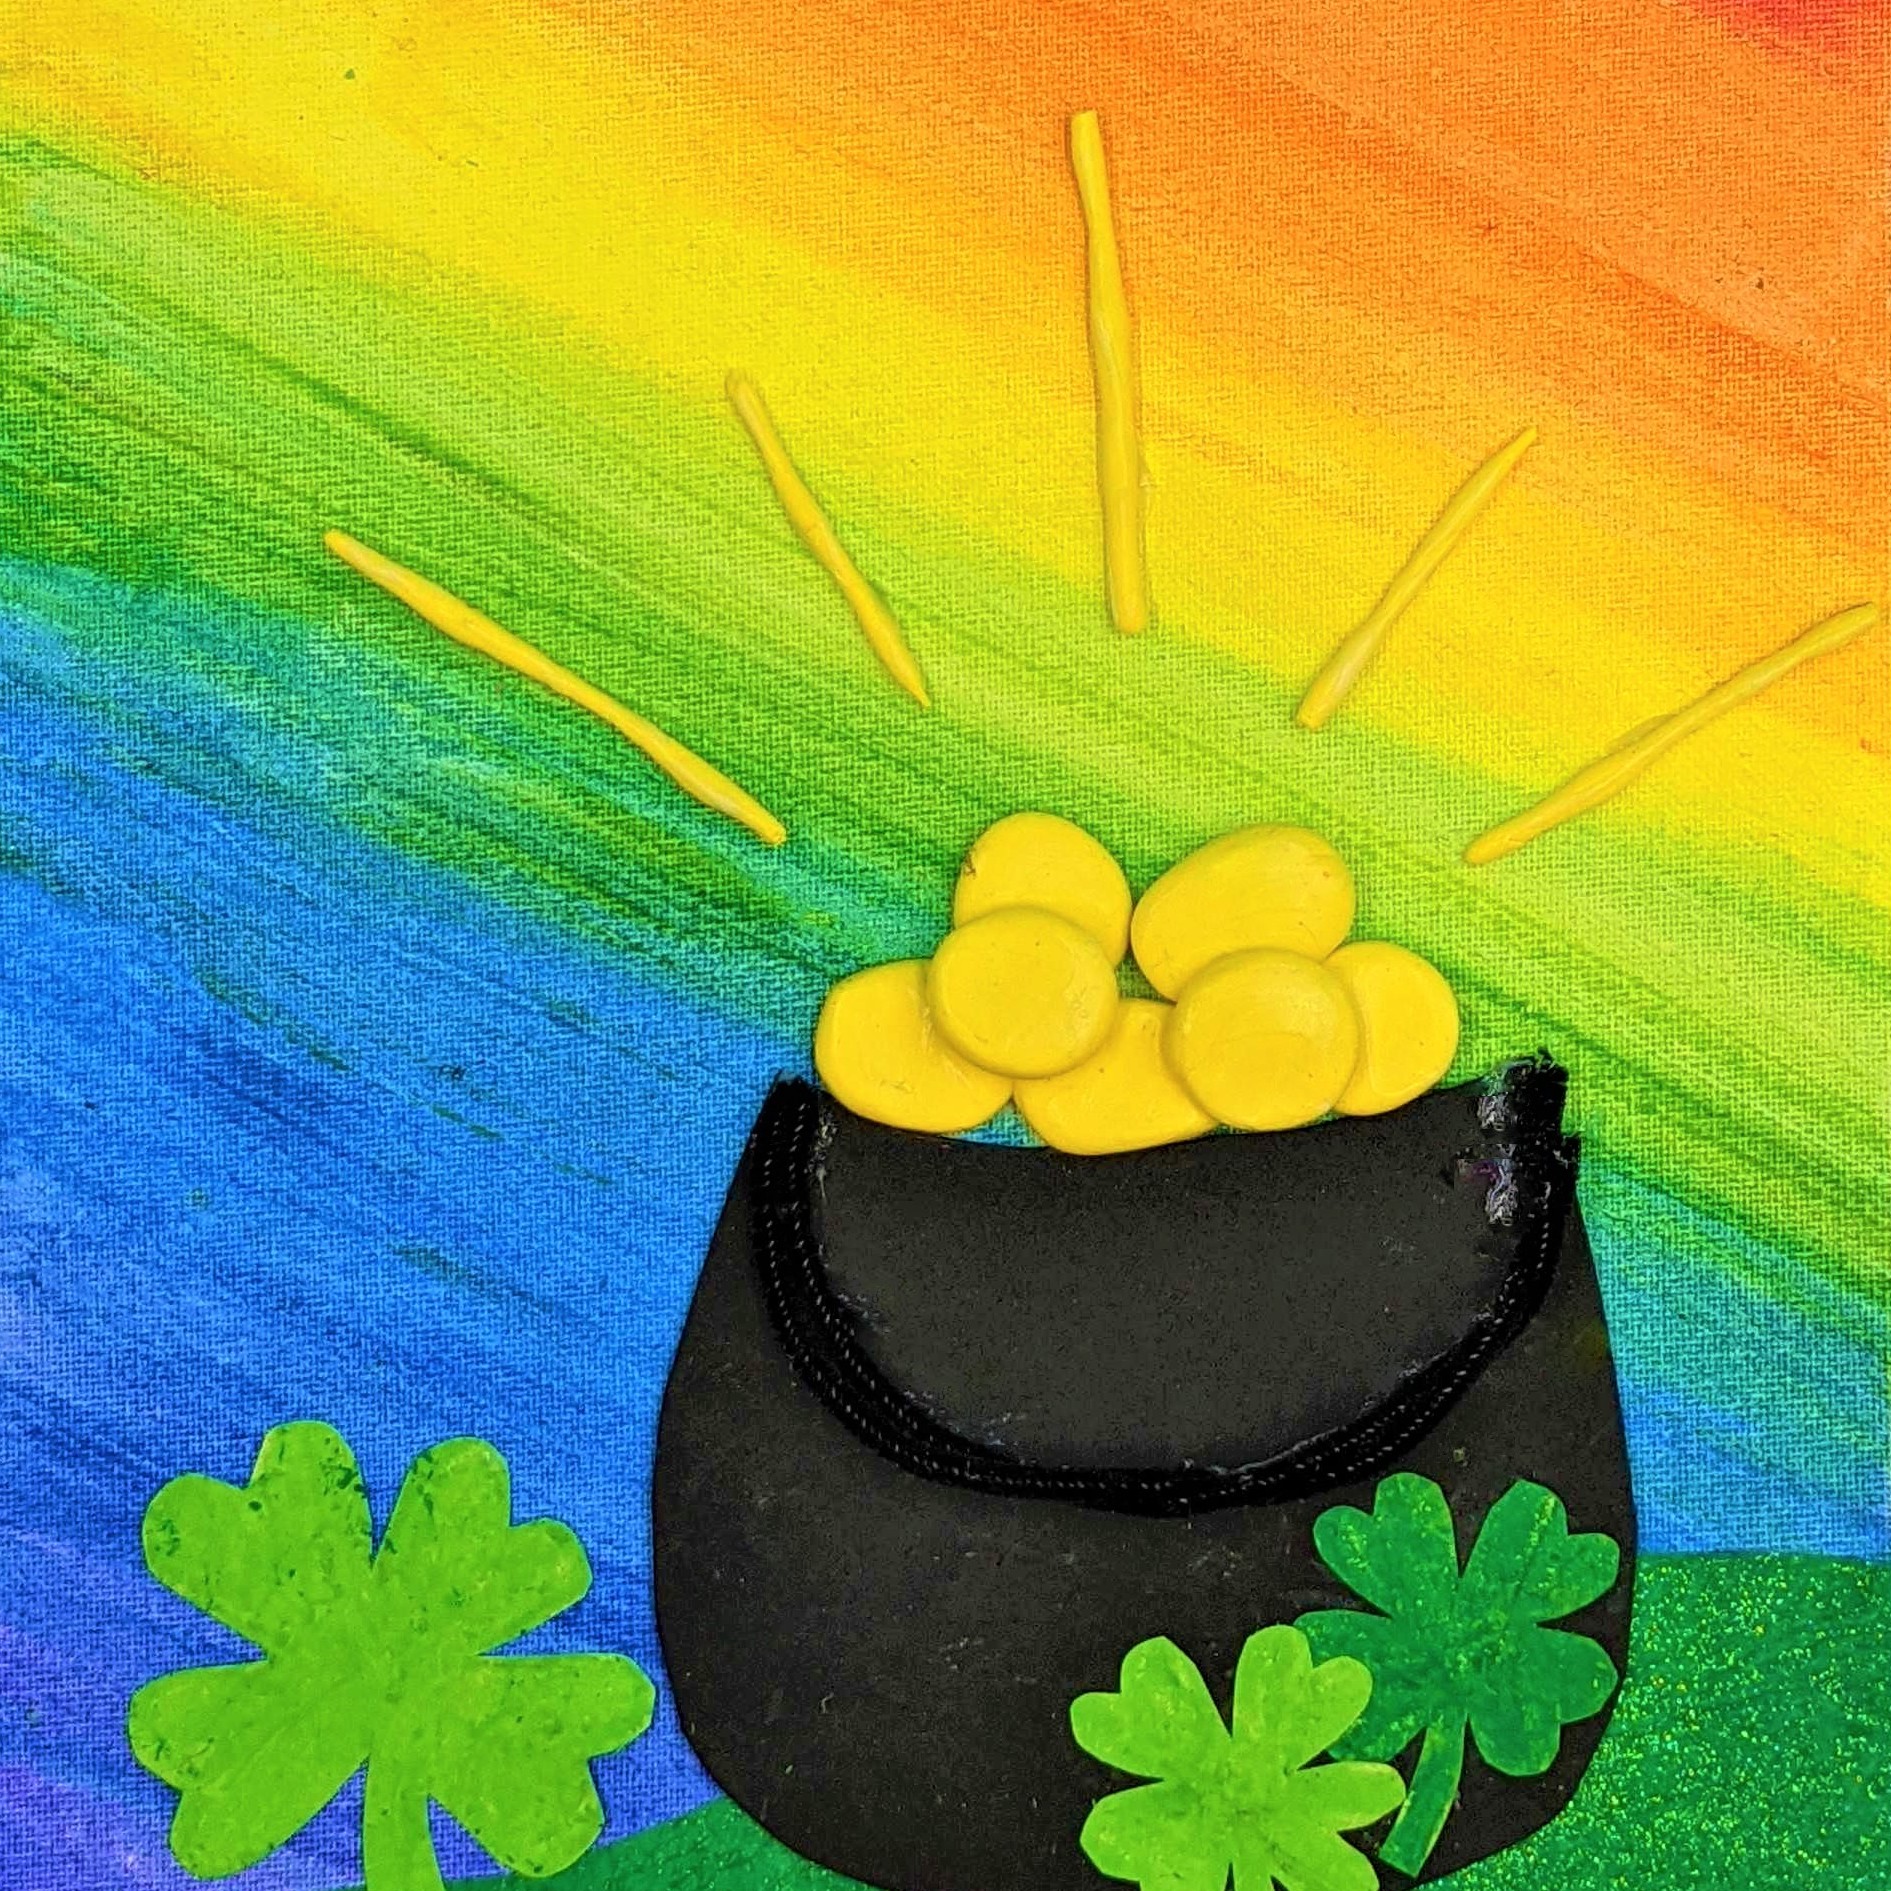 Kidcreate Studio - Ashburn, St. Patrick's Day Rainbow on Canvas Art Project